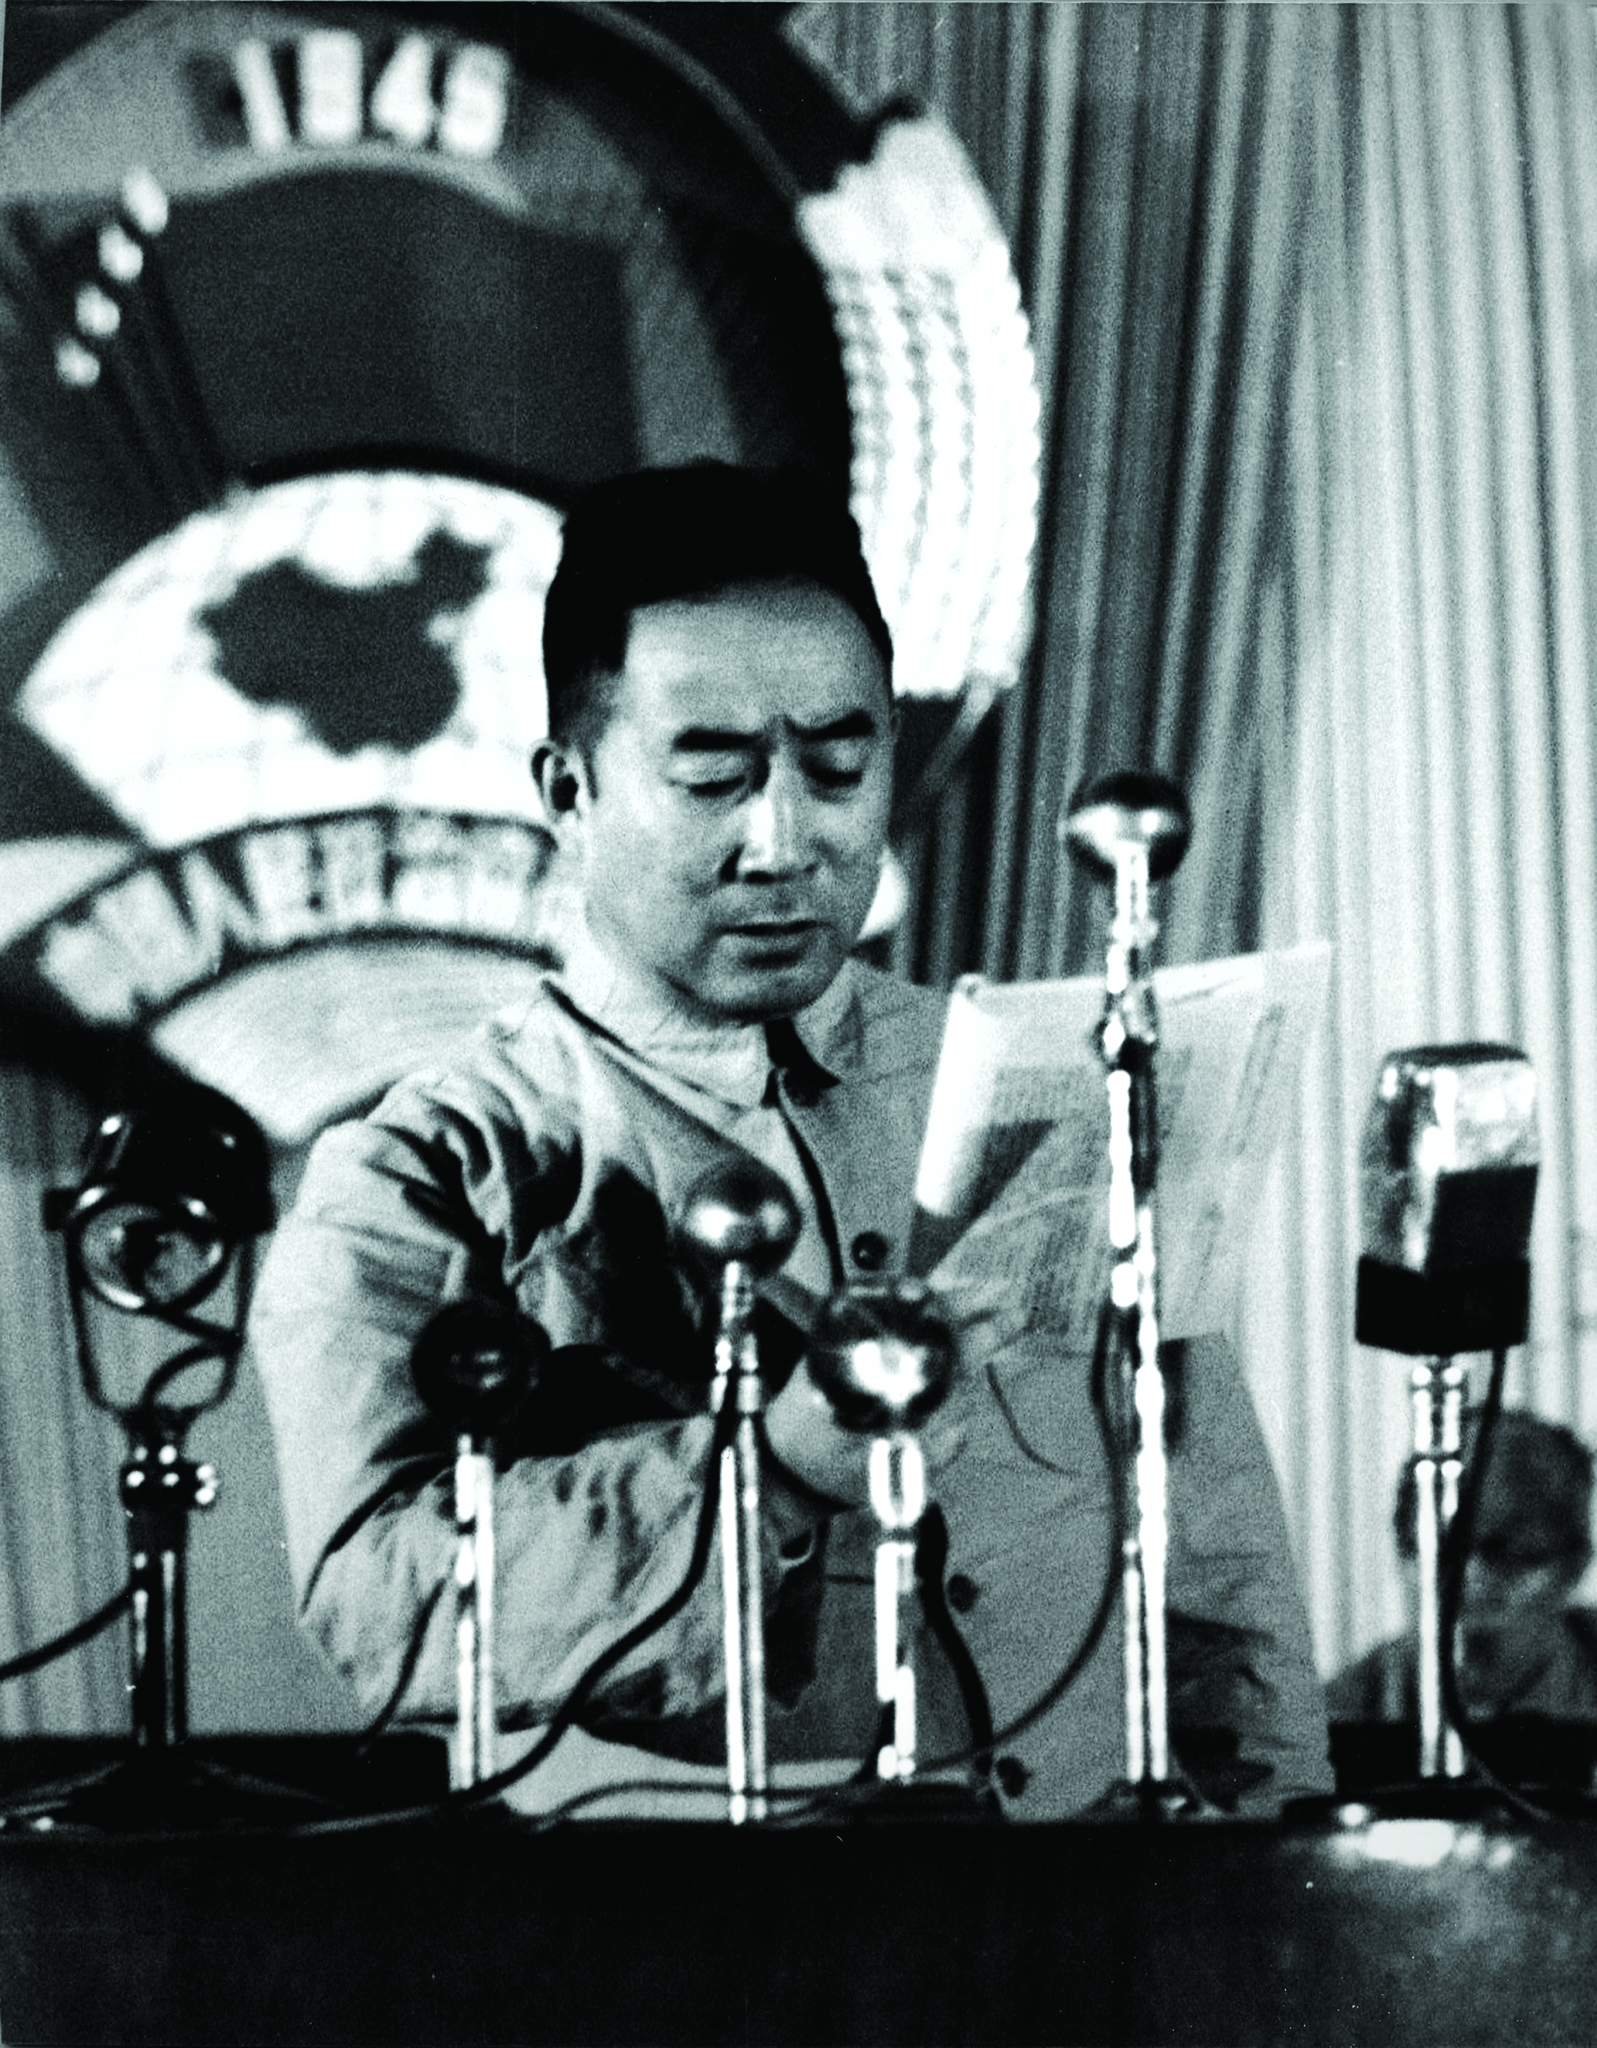 Líder chinês Bo Yibo morreu há dez anos